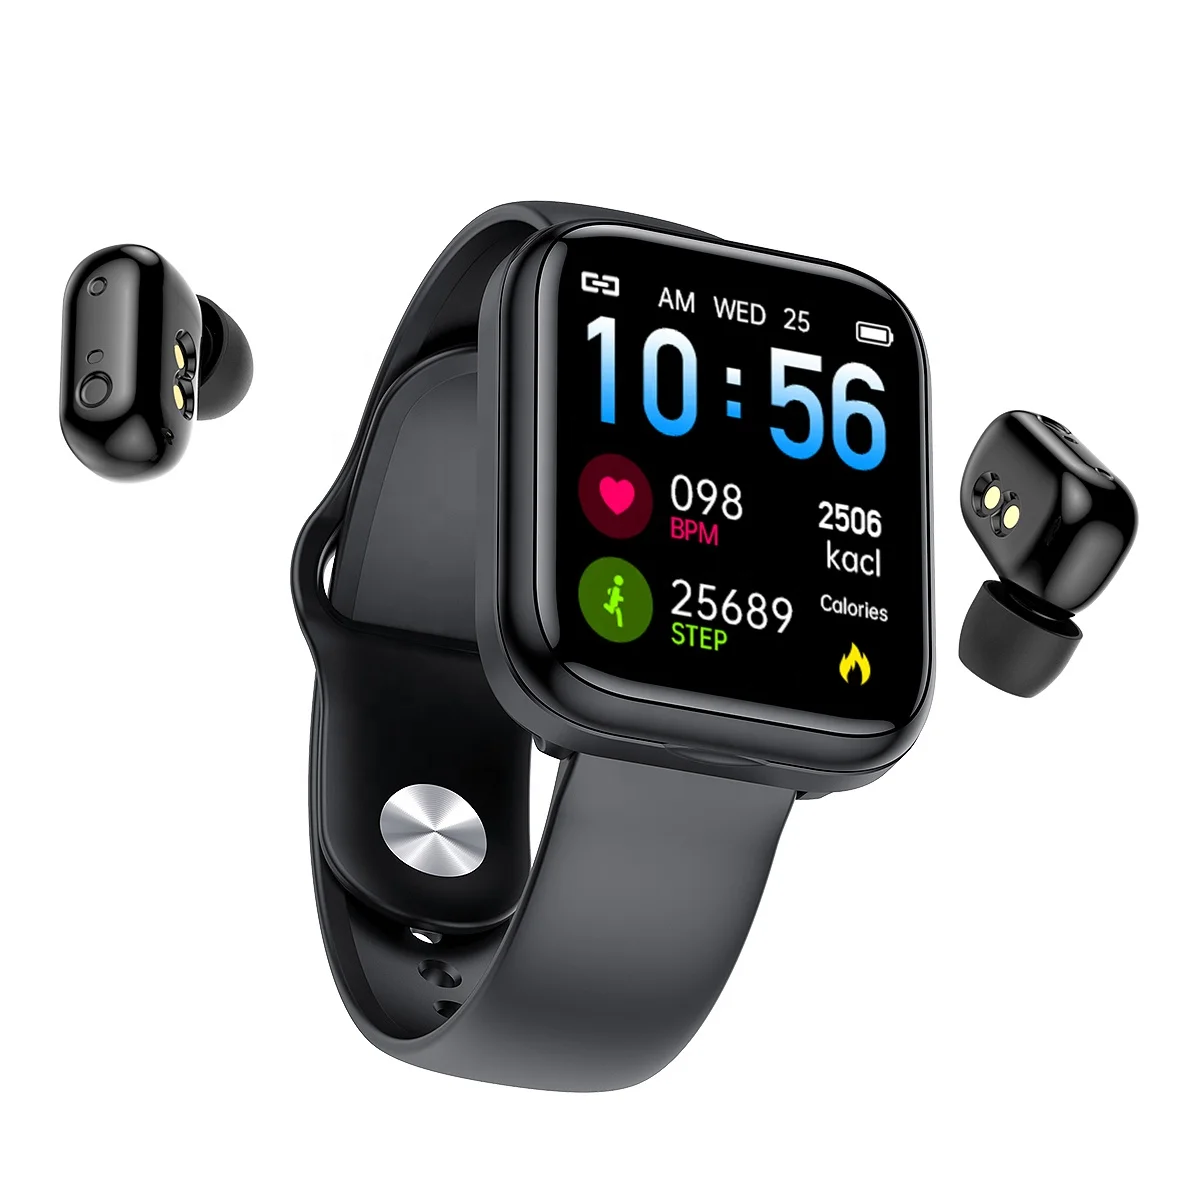 

Wristband Watch Smart Bracelet Sport Handsfree Earbuds 2 in 1 Bluetooths 5.1 TWS Wireless Earphones